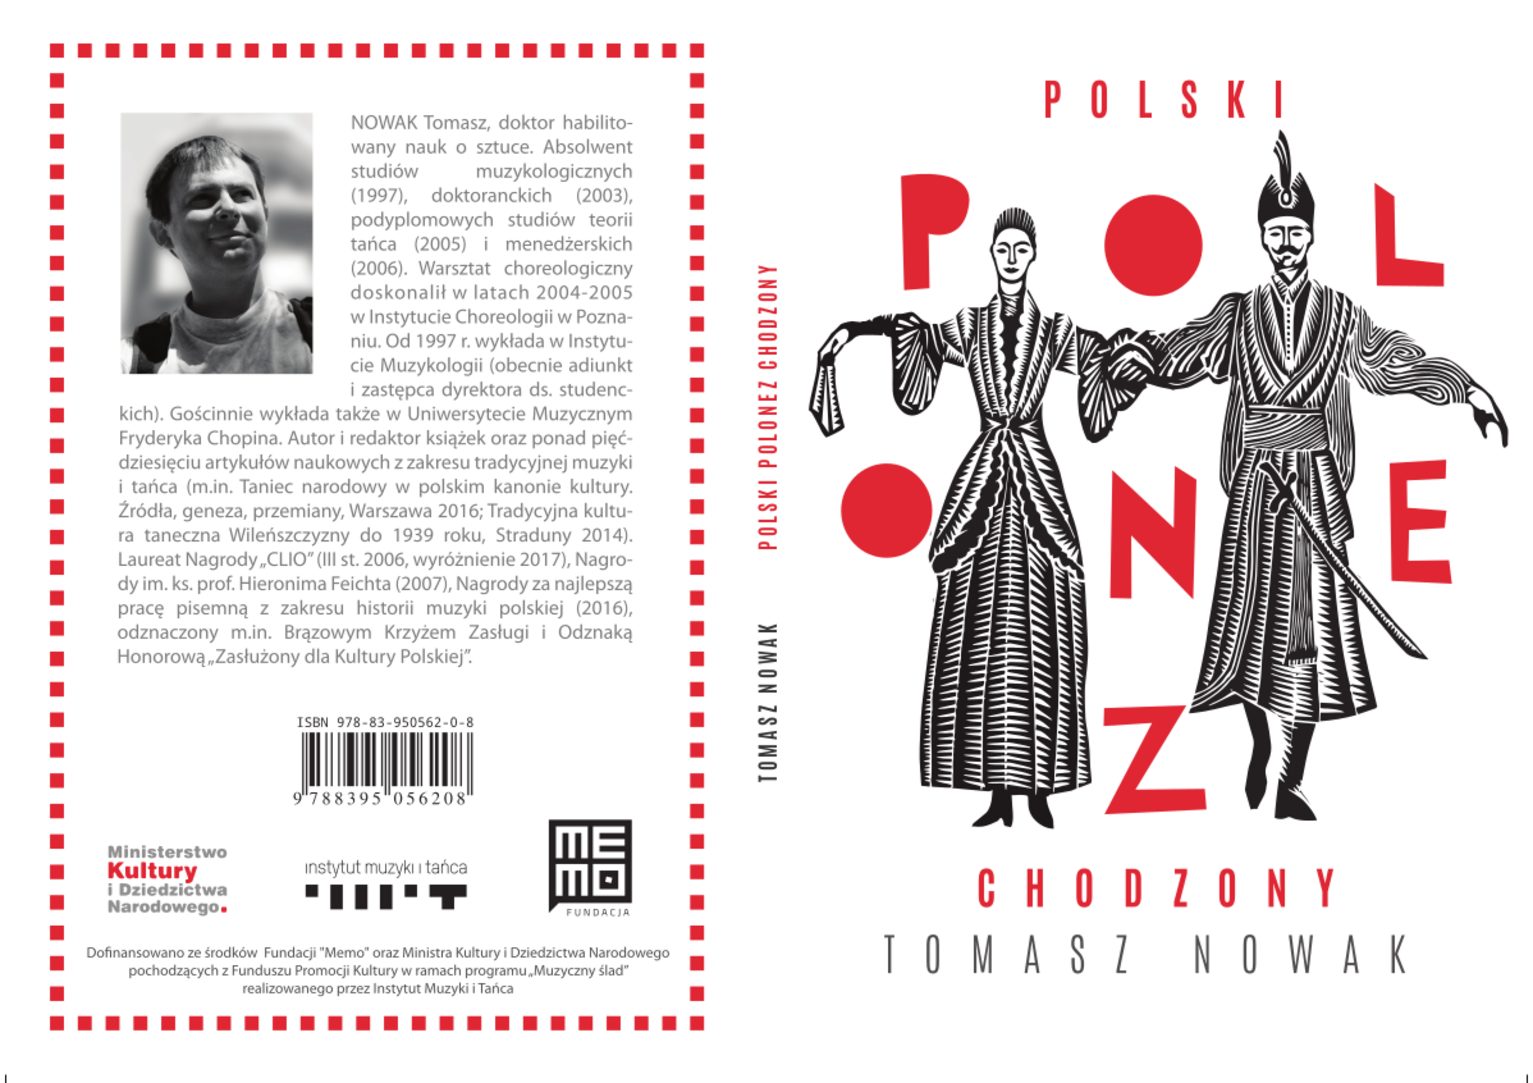 Polski, polonez, chodzony – publikacja w wersji elektronicznej